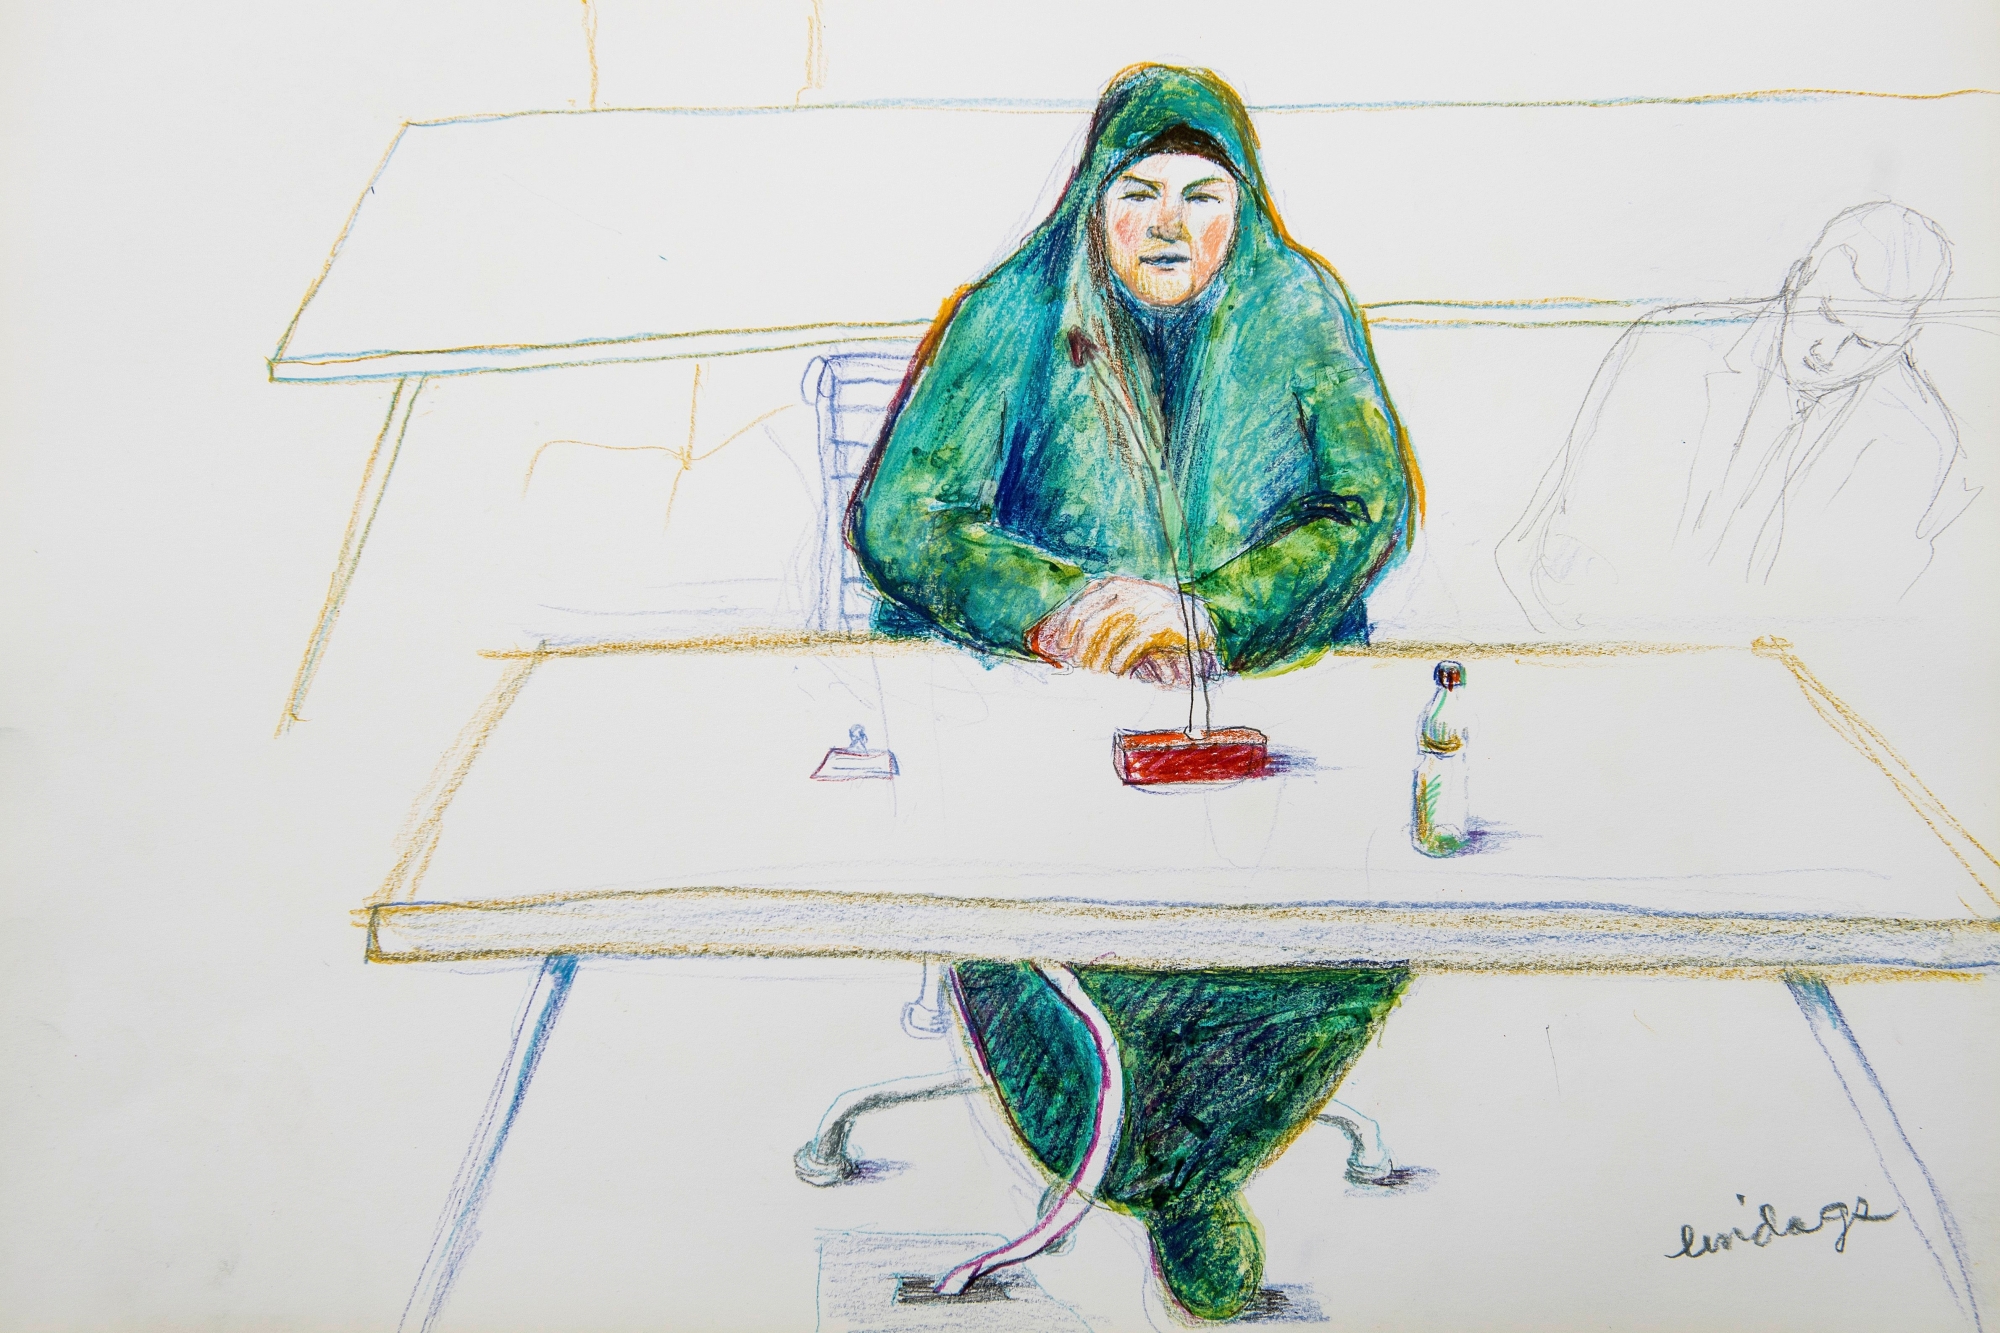 GERICHTSZEICHNUNG - Eine mutmassliche Dschihad-Reisende vor dem Bundesstrafgericht in Bellinzona, am Freitag, 15. Dezember 2017. Die 31-jaehrige Frau wollte sich im Januar 2016 mit ihrem vierjaehrigen Sohn der Terrormiliz IS in Syrien anschliessen. Wann das Urteil fallen wird, ist noch offen.(KEYSTONE/Zeichnung/Linda Graedel) SCHWEIZ PROZESS DSCHIHADREISENDE